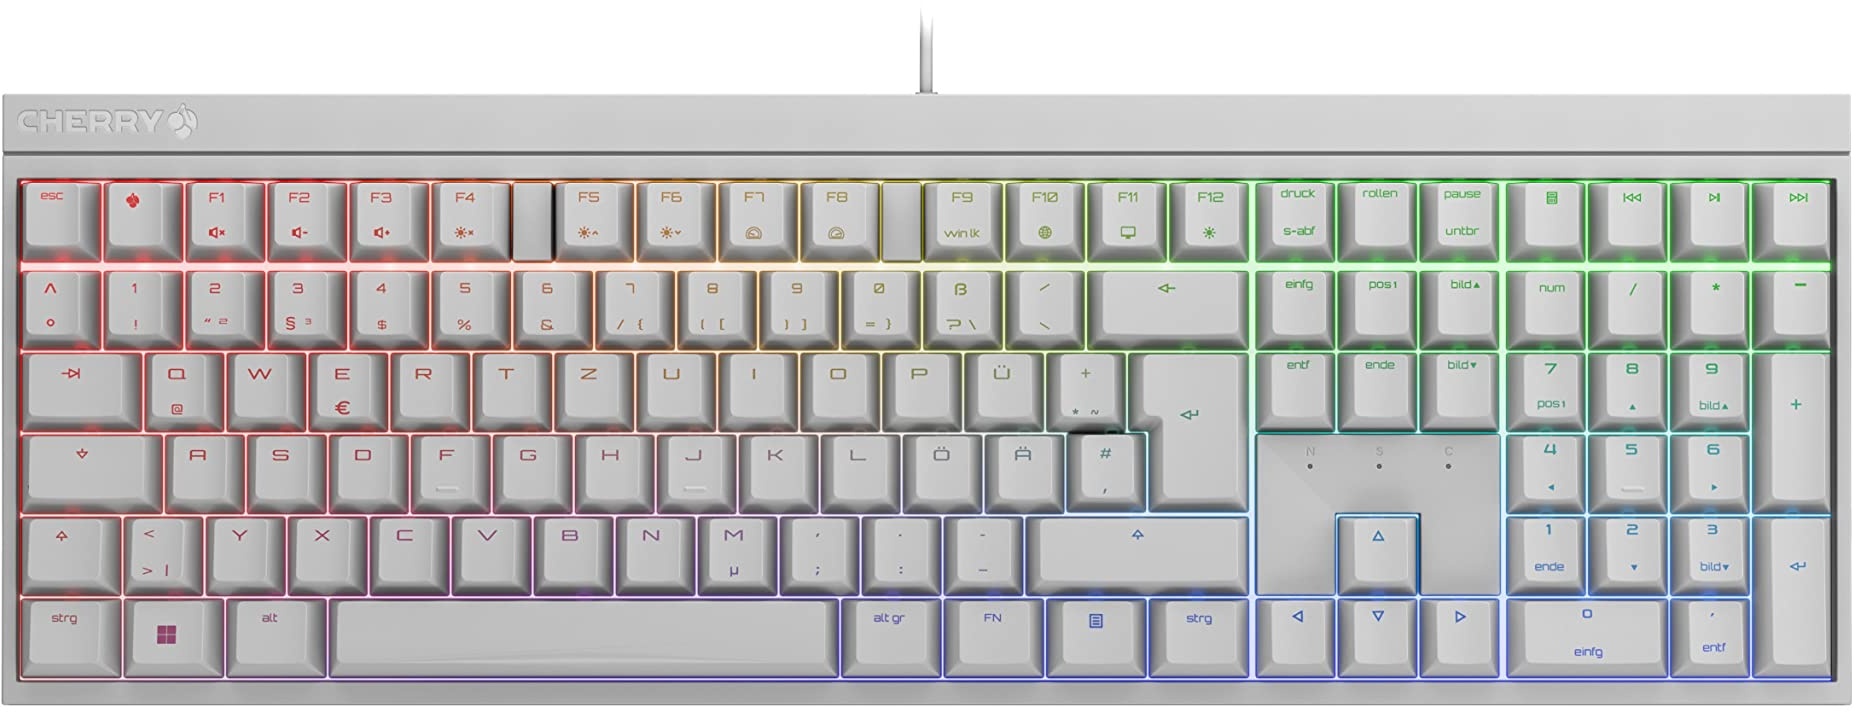 CHERRY MX 2.0S, Kabelgebundene Gaming-Tastatur mit RGB-Beleuchtung, Deutsches Layout (QWERTZ), Designed in Germany, Original MX BLUE Switches, Weiß